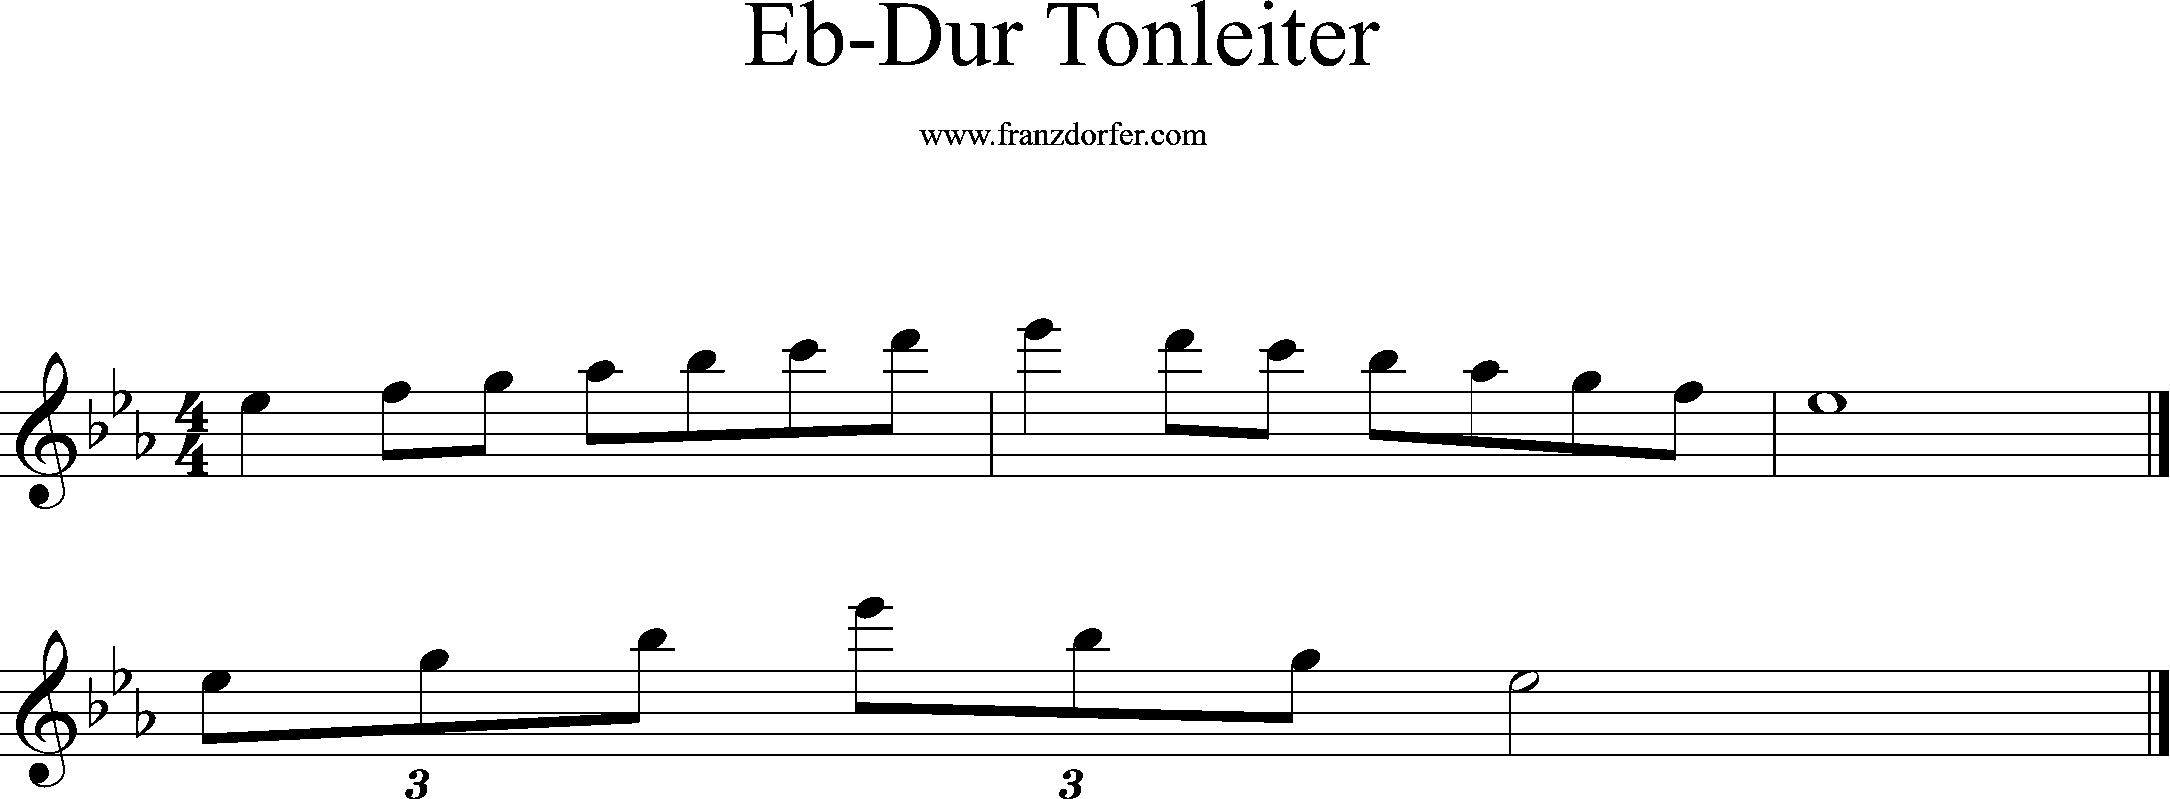 eb-dur tonleiter, eb2-eb3